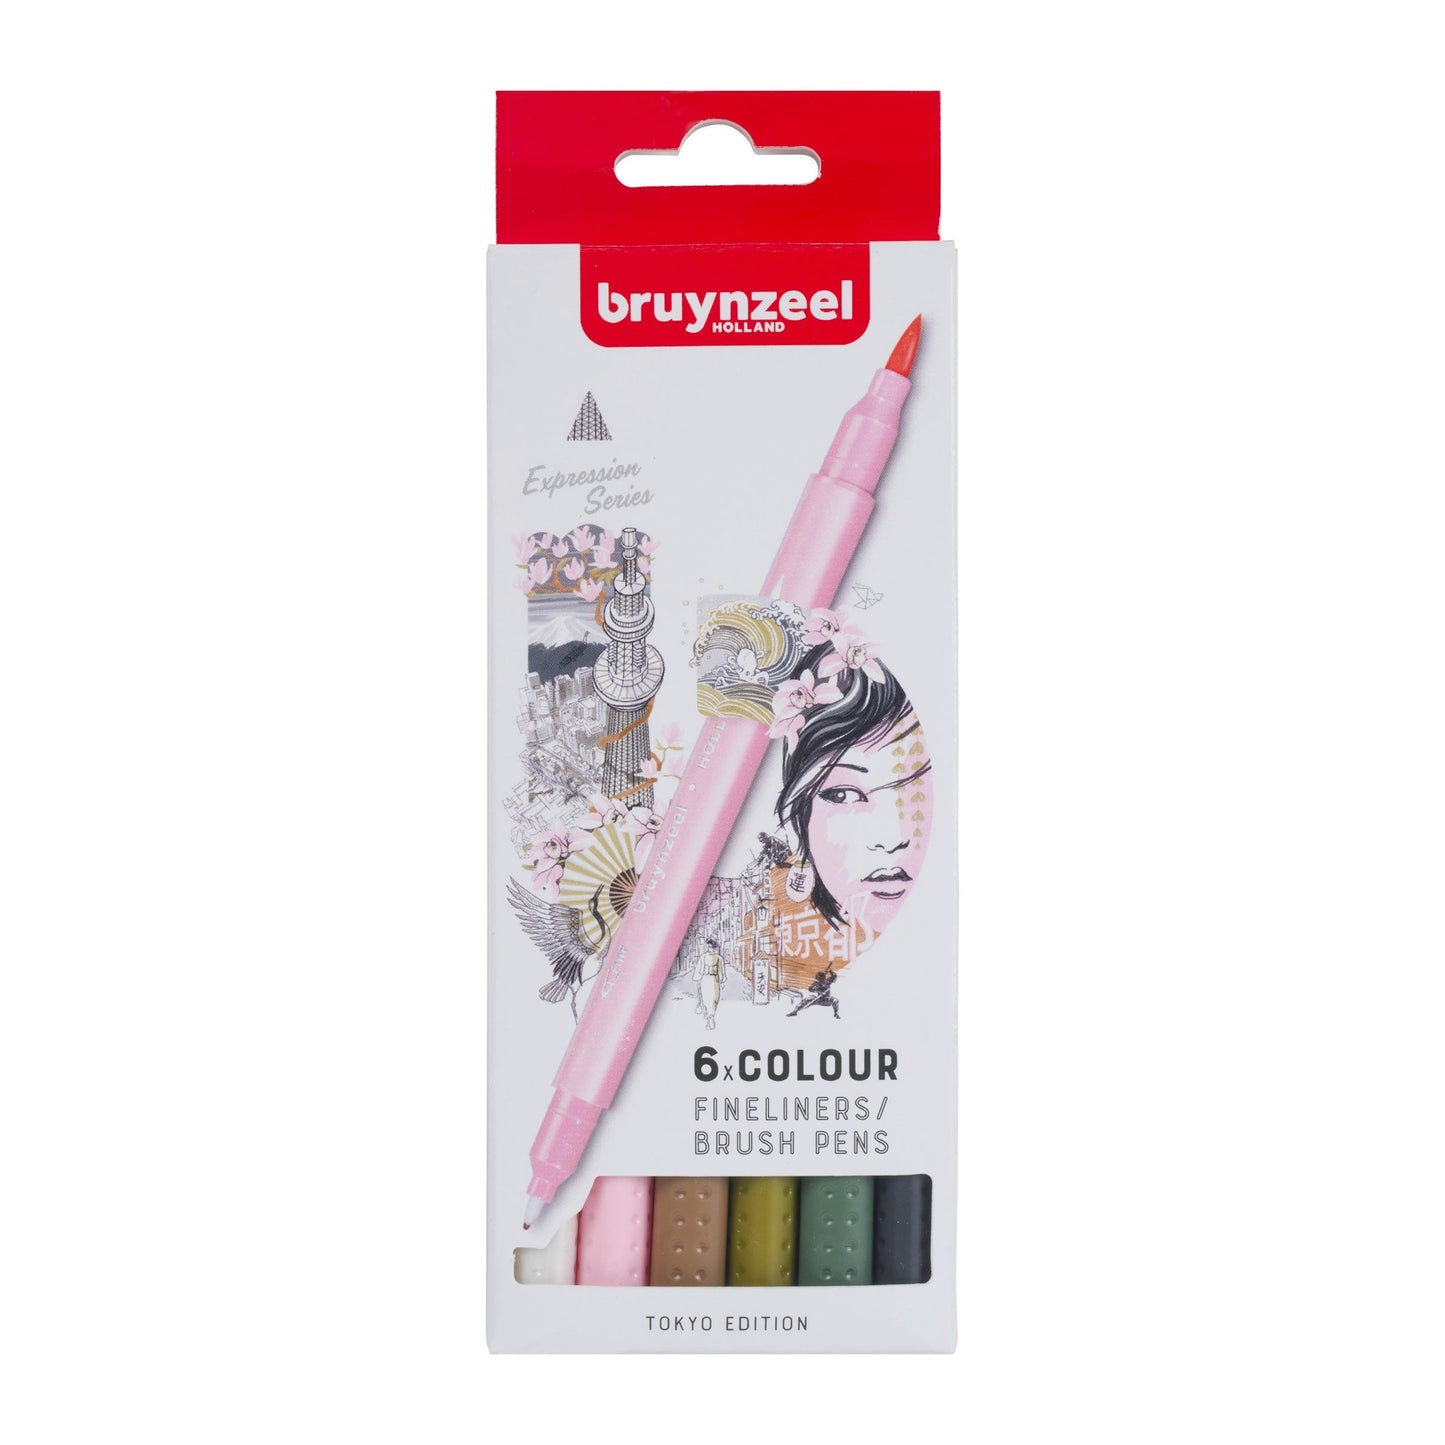 Tokyo dual tip Fineliner / brush pens 6 pack Bruynzeel - Paper Dream